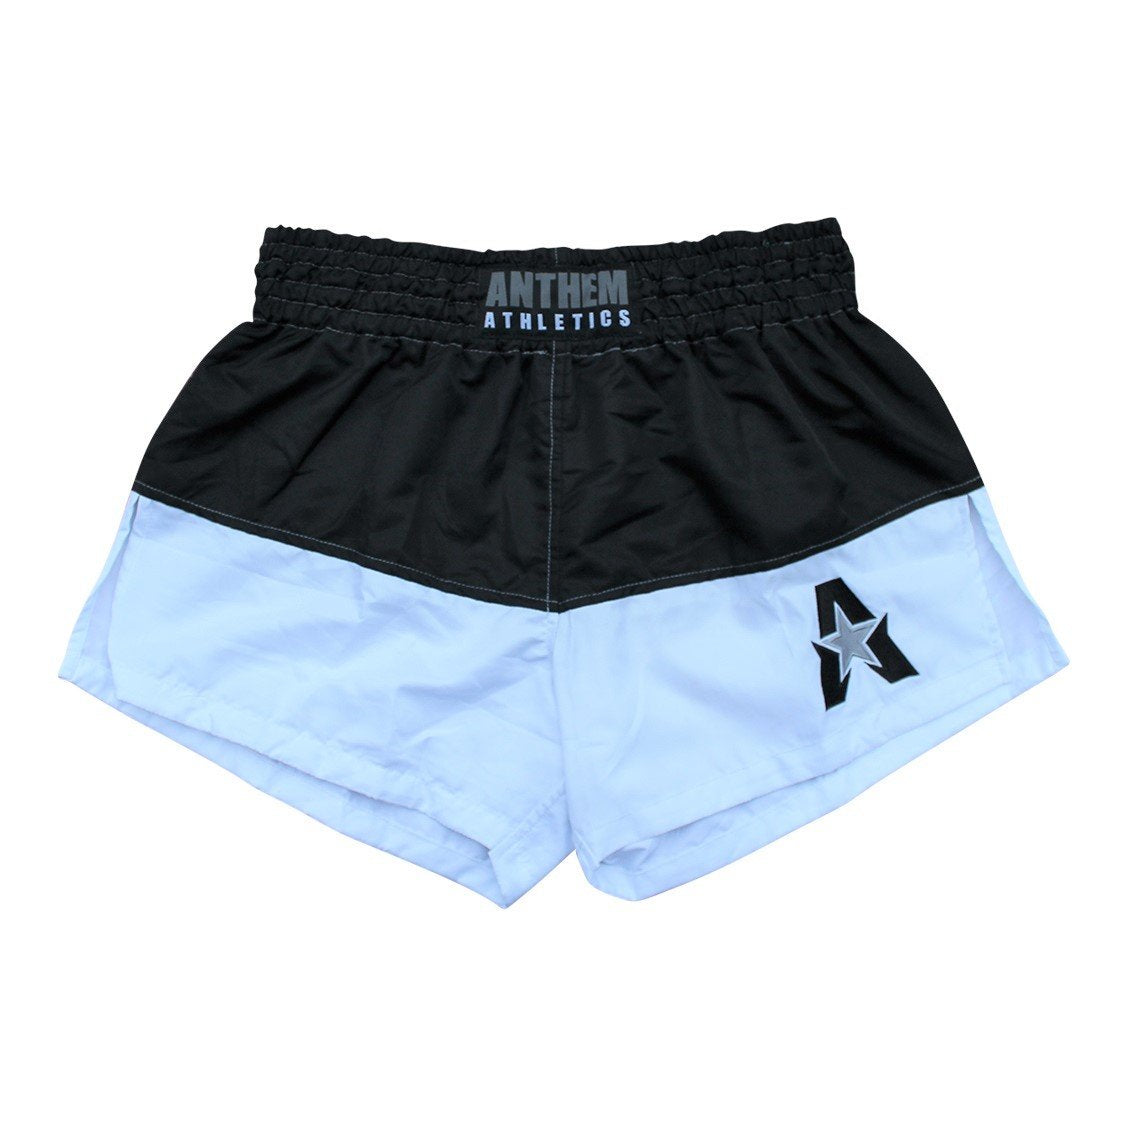 Anthem Athletics Resolute Muay Thai Shorts - Pantalones cortos de boxeo  para hombre y mujer